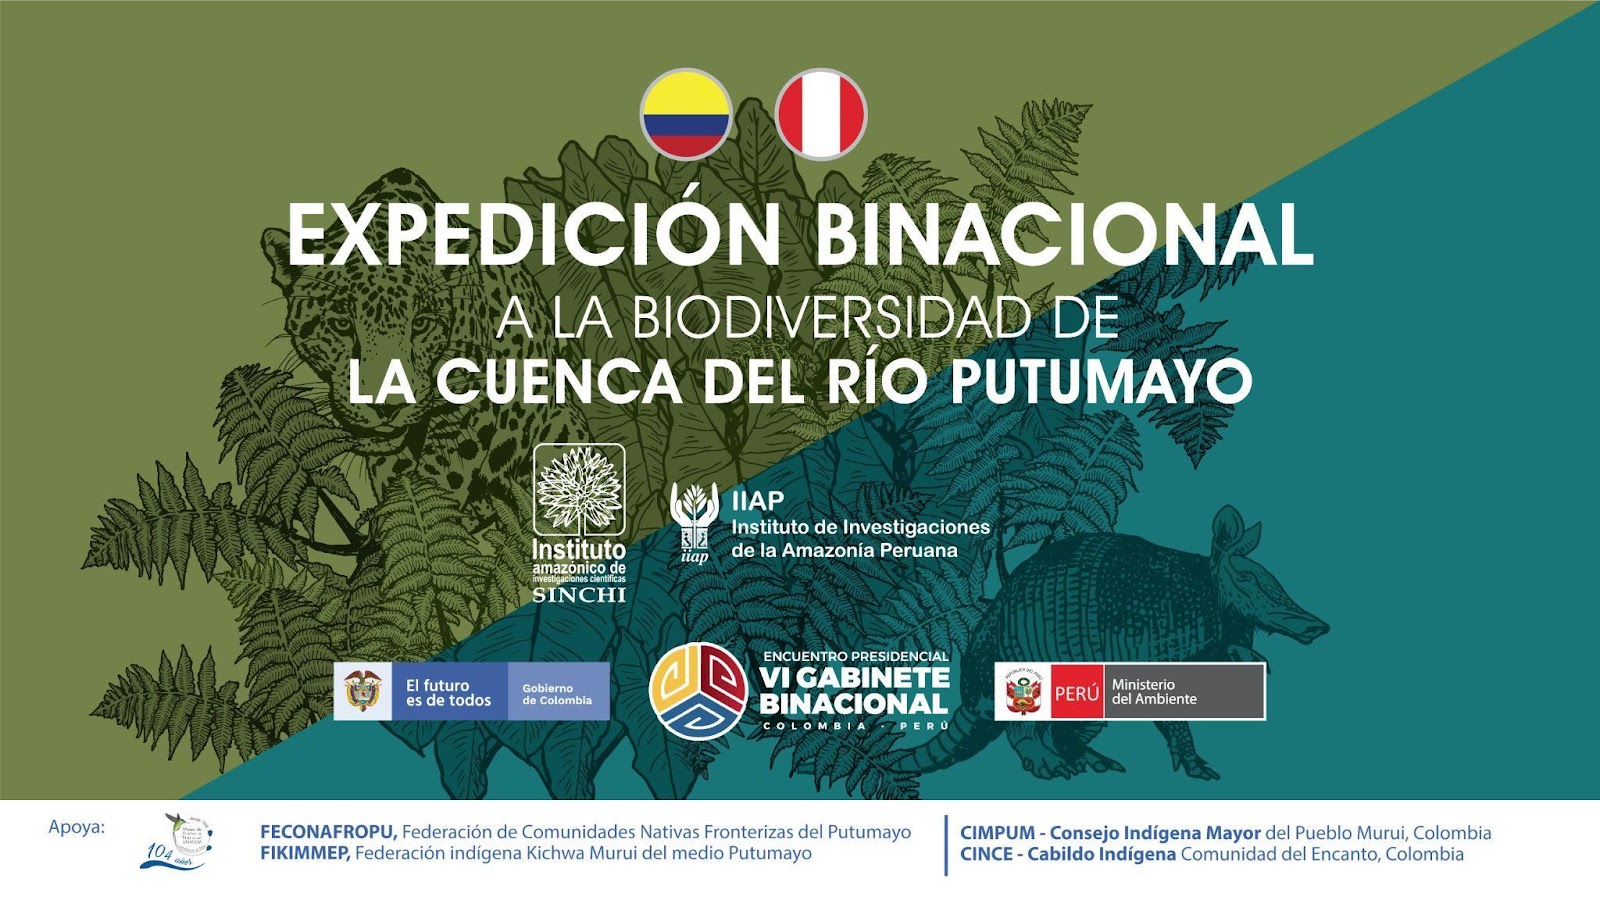 Así será la Expedición Binacional a la Cuenca del río Putumayo entre Perú y Colombia